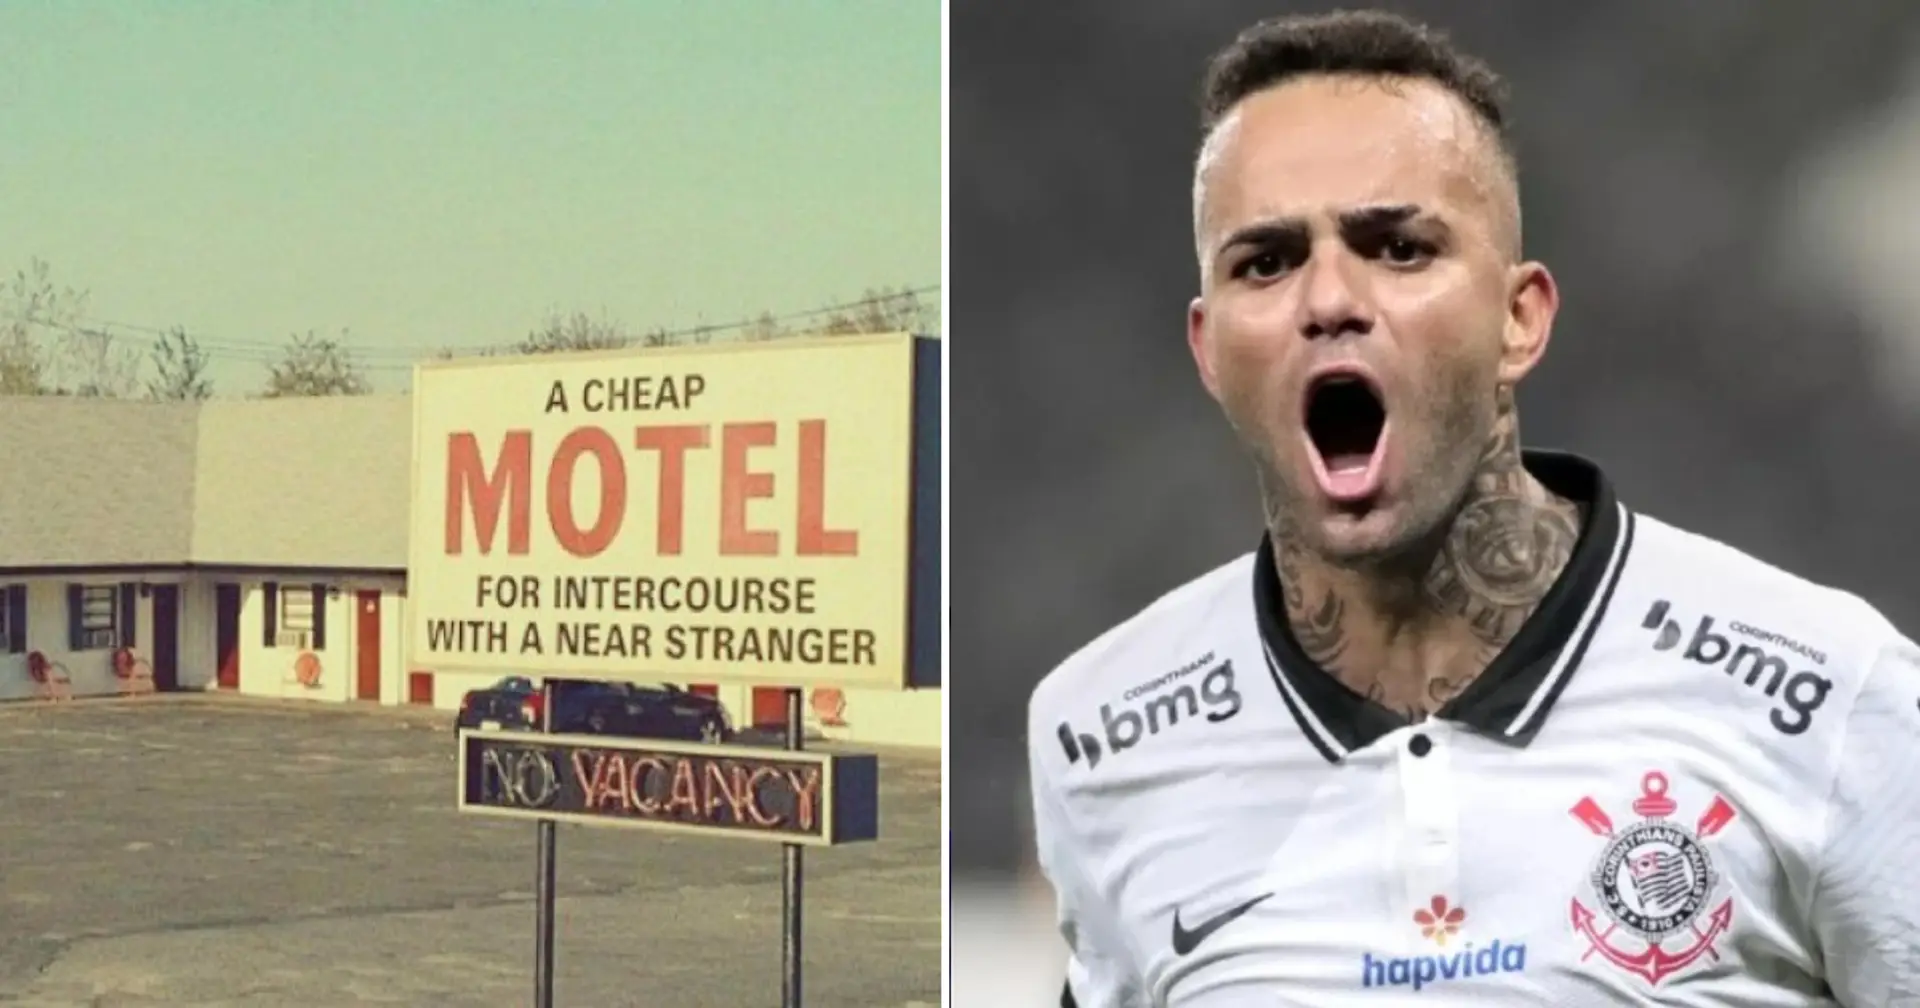 Corinthians-Fans attackierten ihren Star während einer Orgie mit 4 Frauen und verglichen ihn mit Eden Hazard